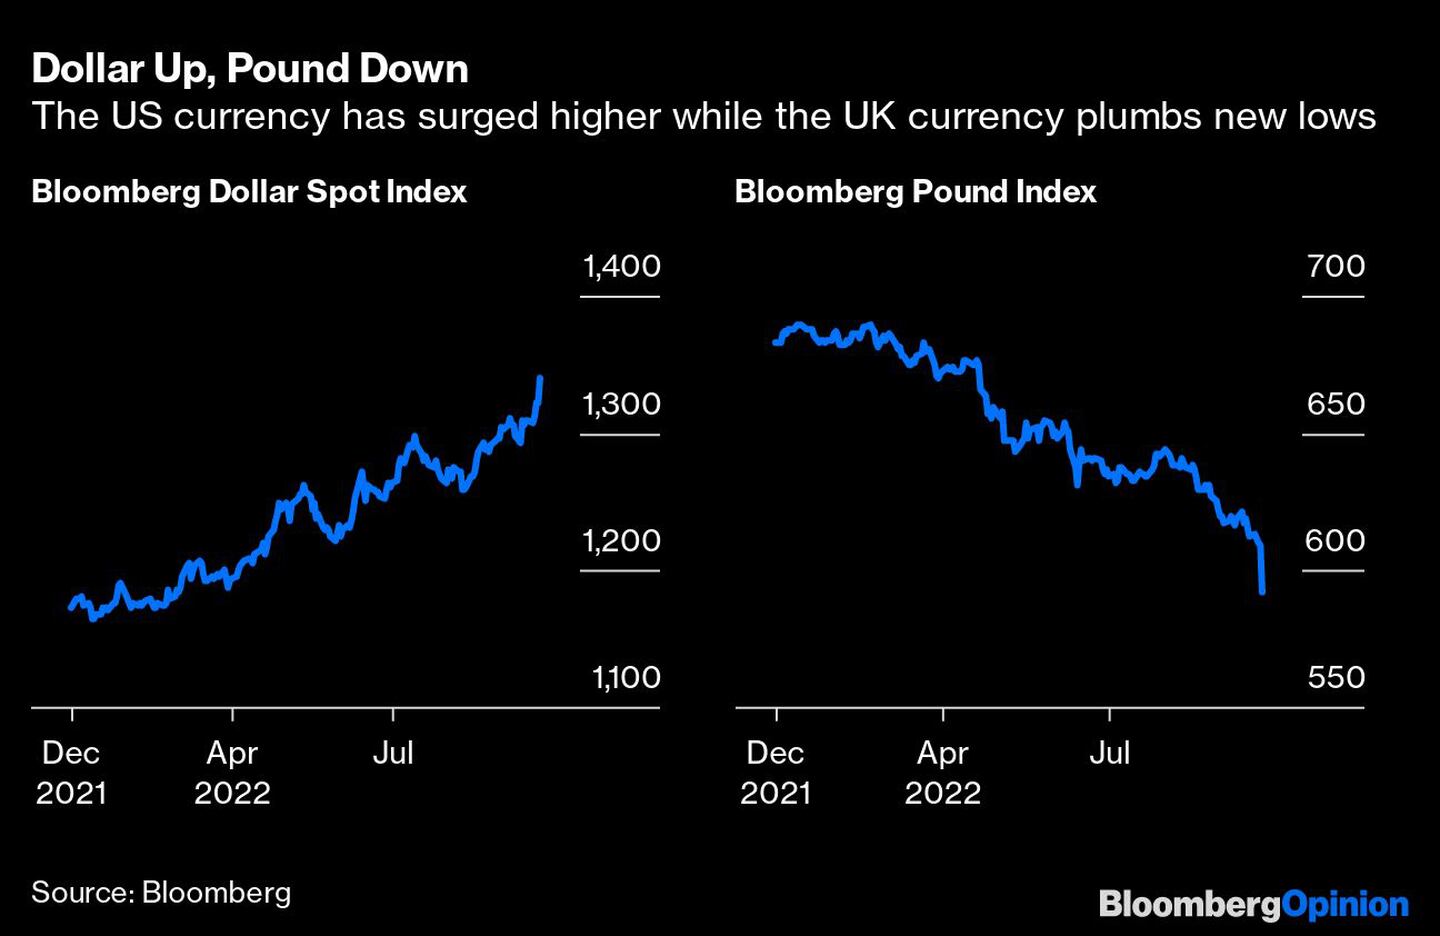 La divisa estadounidense sube, mientras que la británica marca nuevos mínimos.dfd